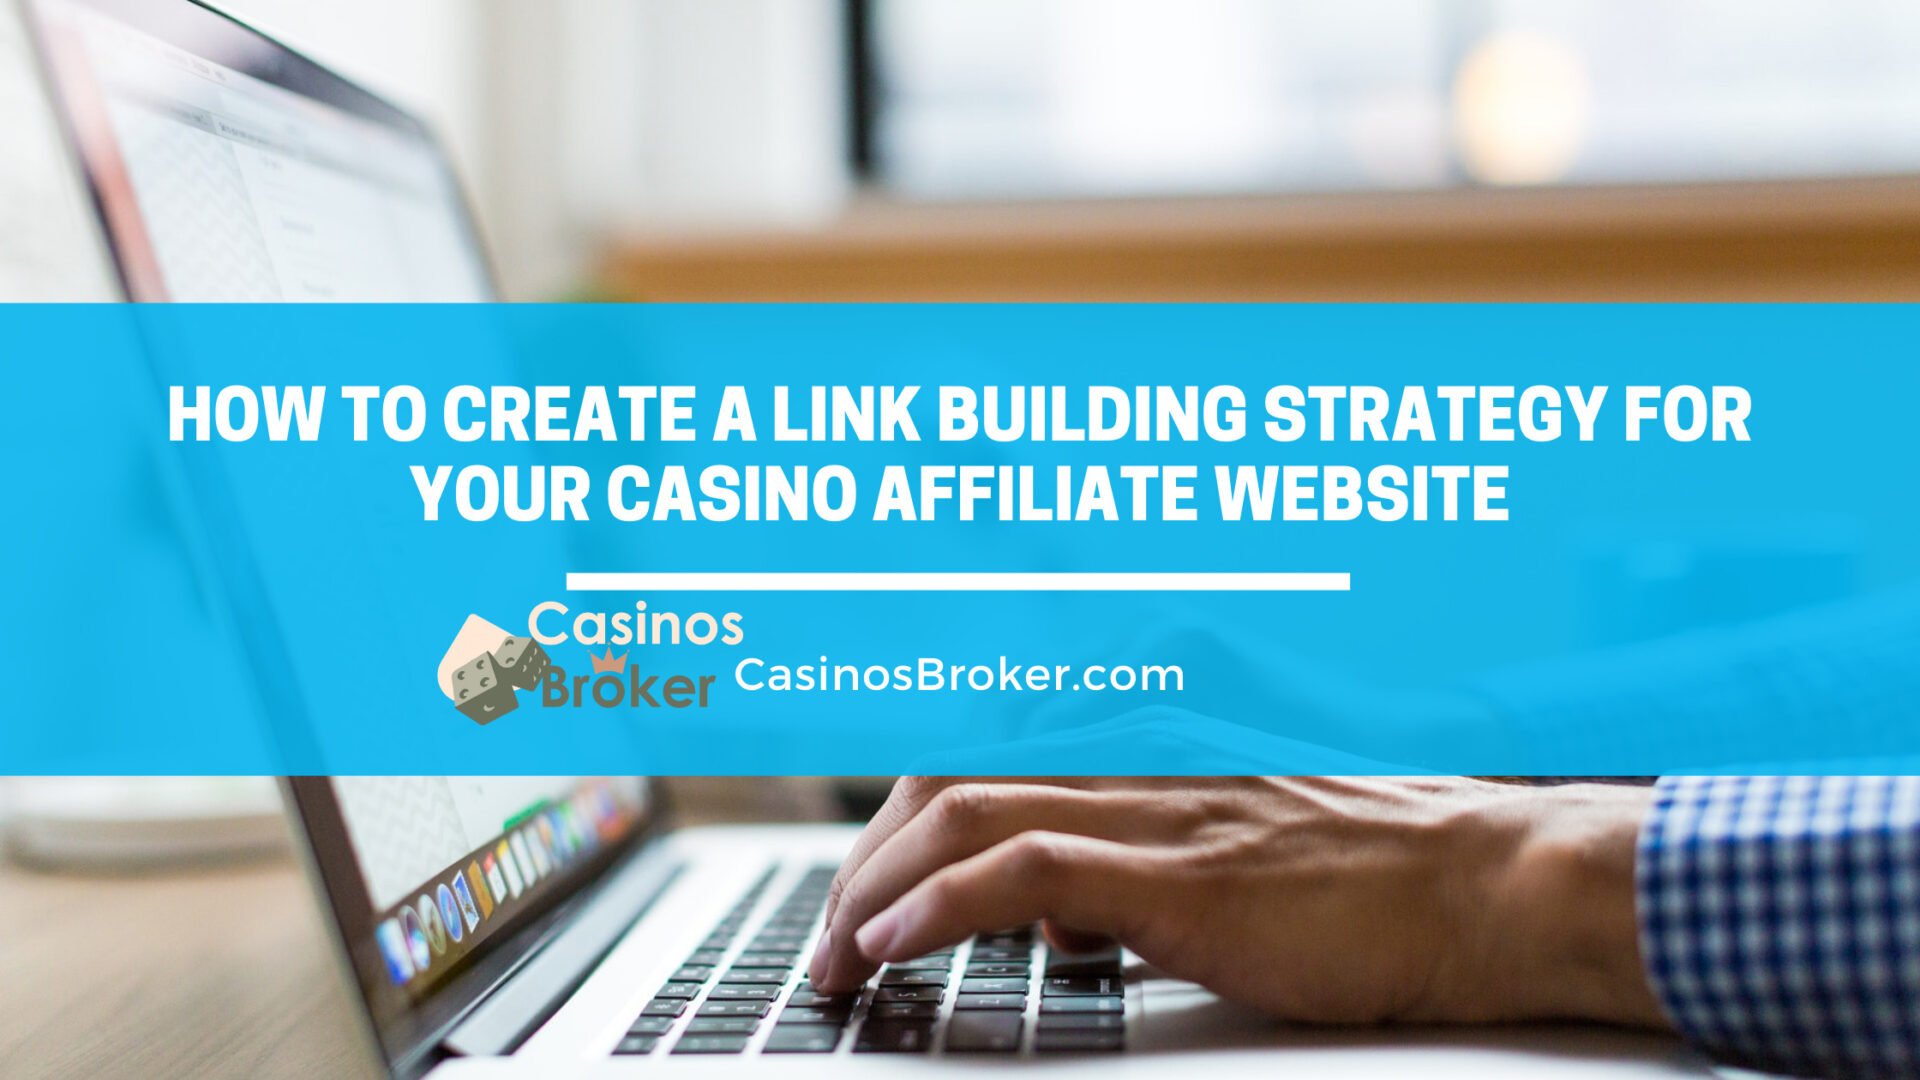 Sådan skaber du en strategi for linkbuilding til dit casino affiliate-websted